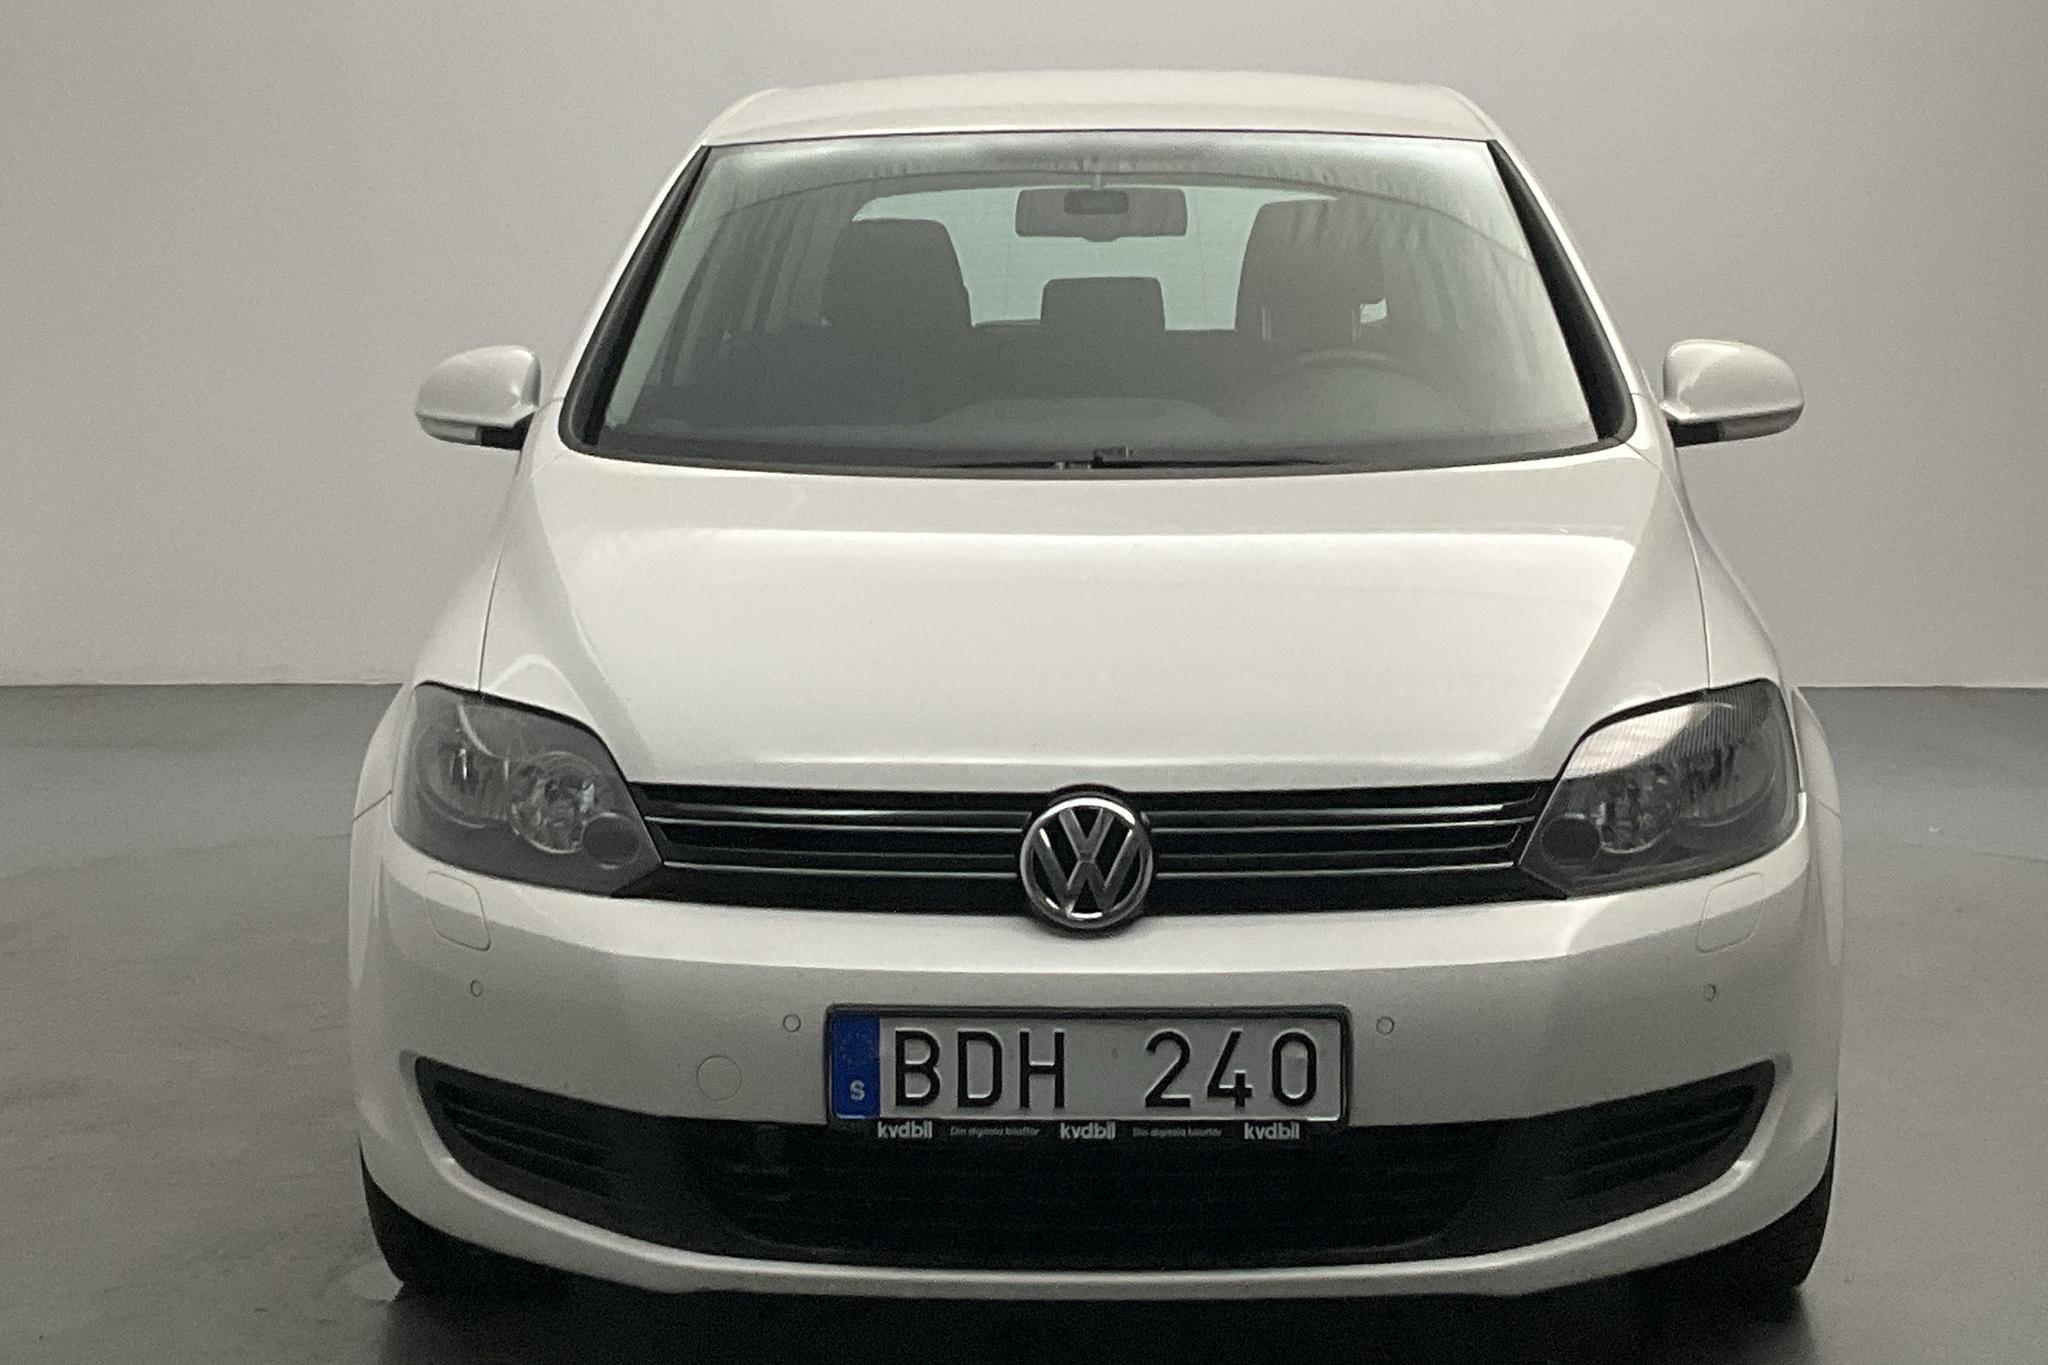 VW Golf Plus VI 1.6 TDI BlueMotion Technology Plus (105hk) - 81 610 km - Manual - white - 2012